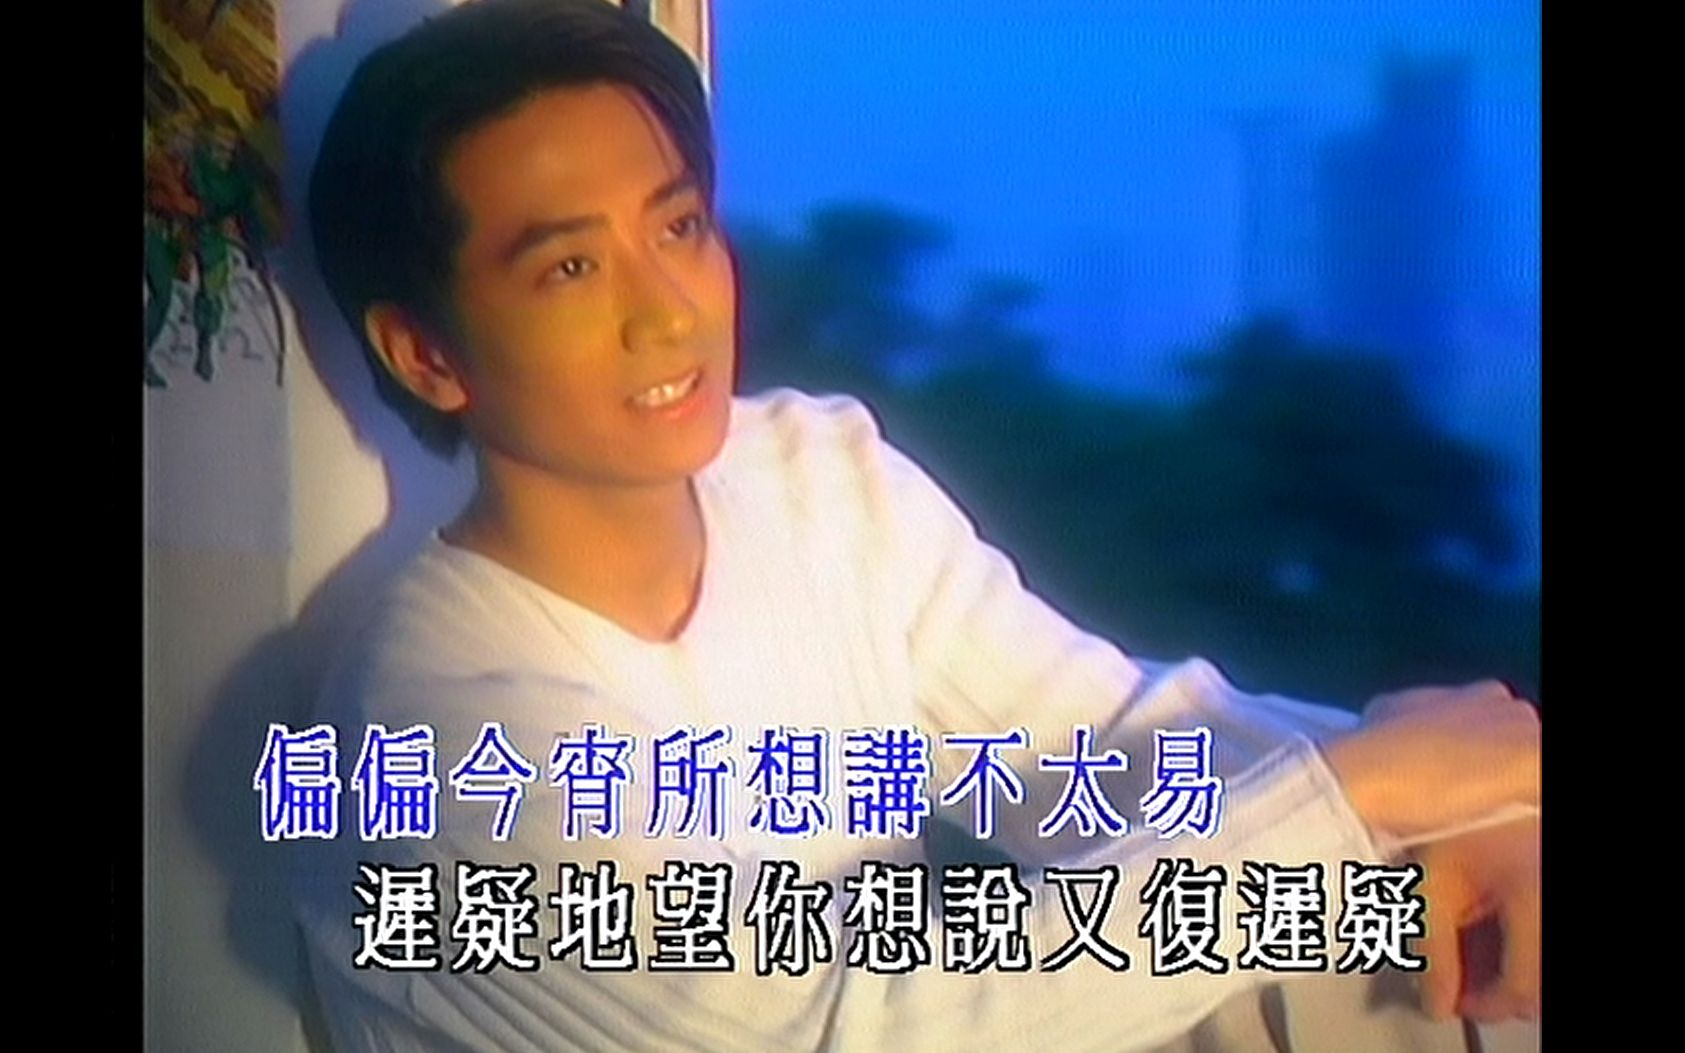 1993年孙耀威上节目宣传《认识你真好》专辑